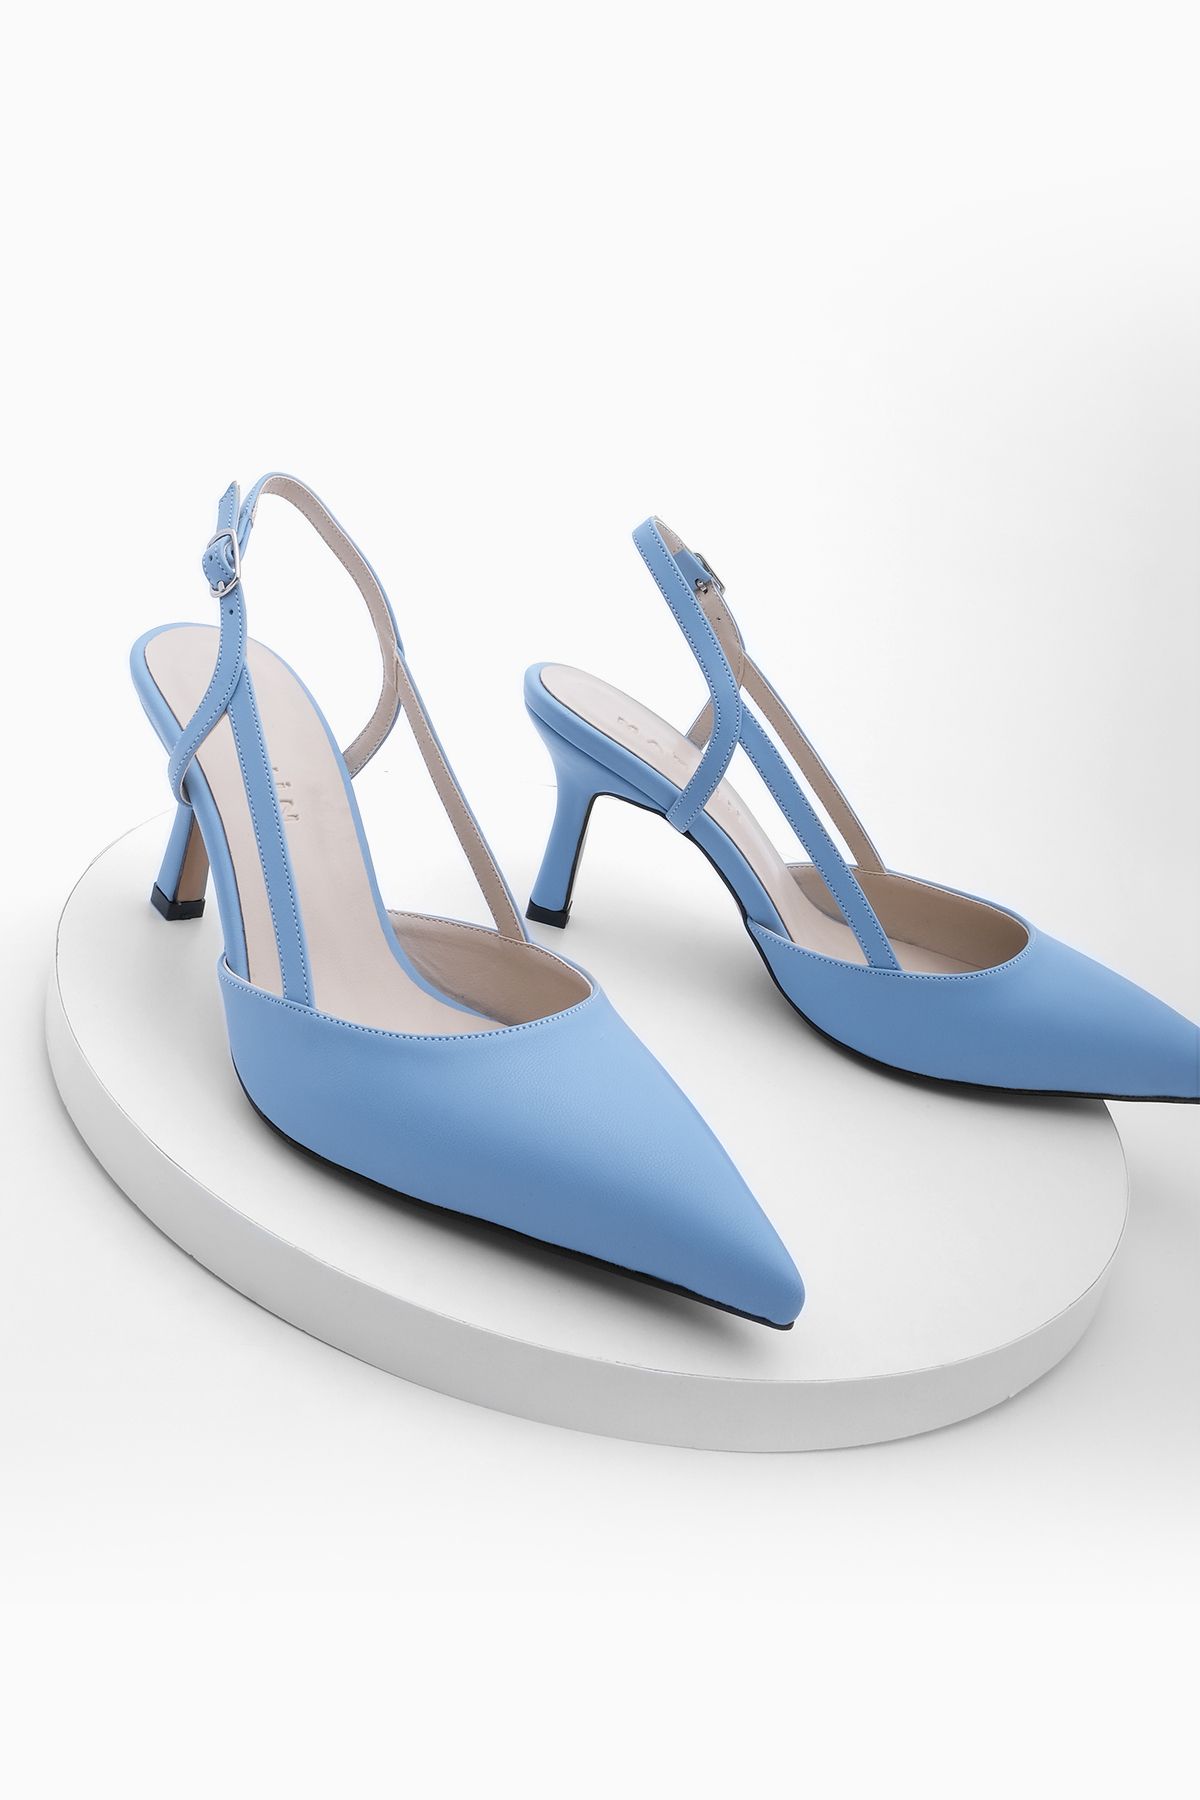 Marjin Kadın Sivri Burun Yanları Açık Bantlı Klasik Topuklu Ayakkabı Suder mavi